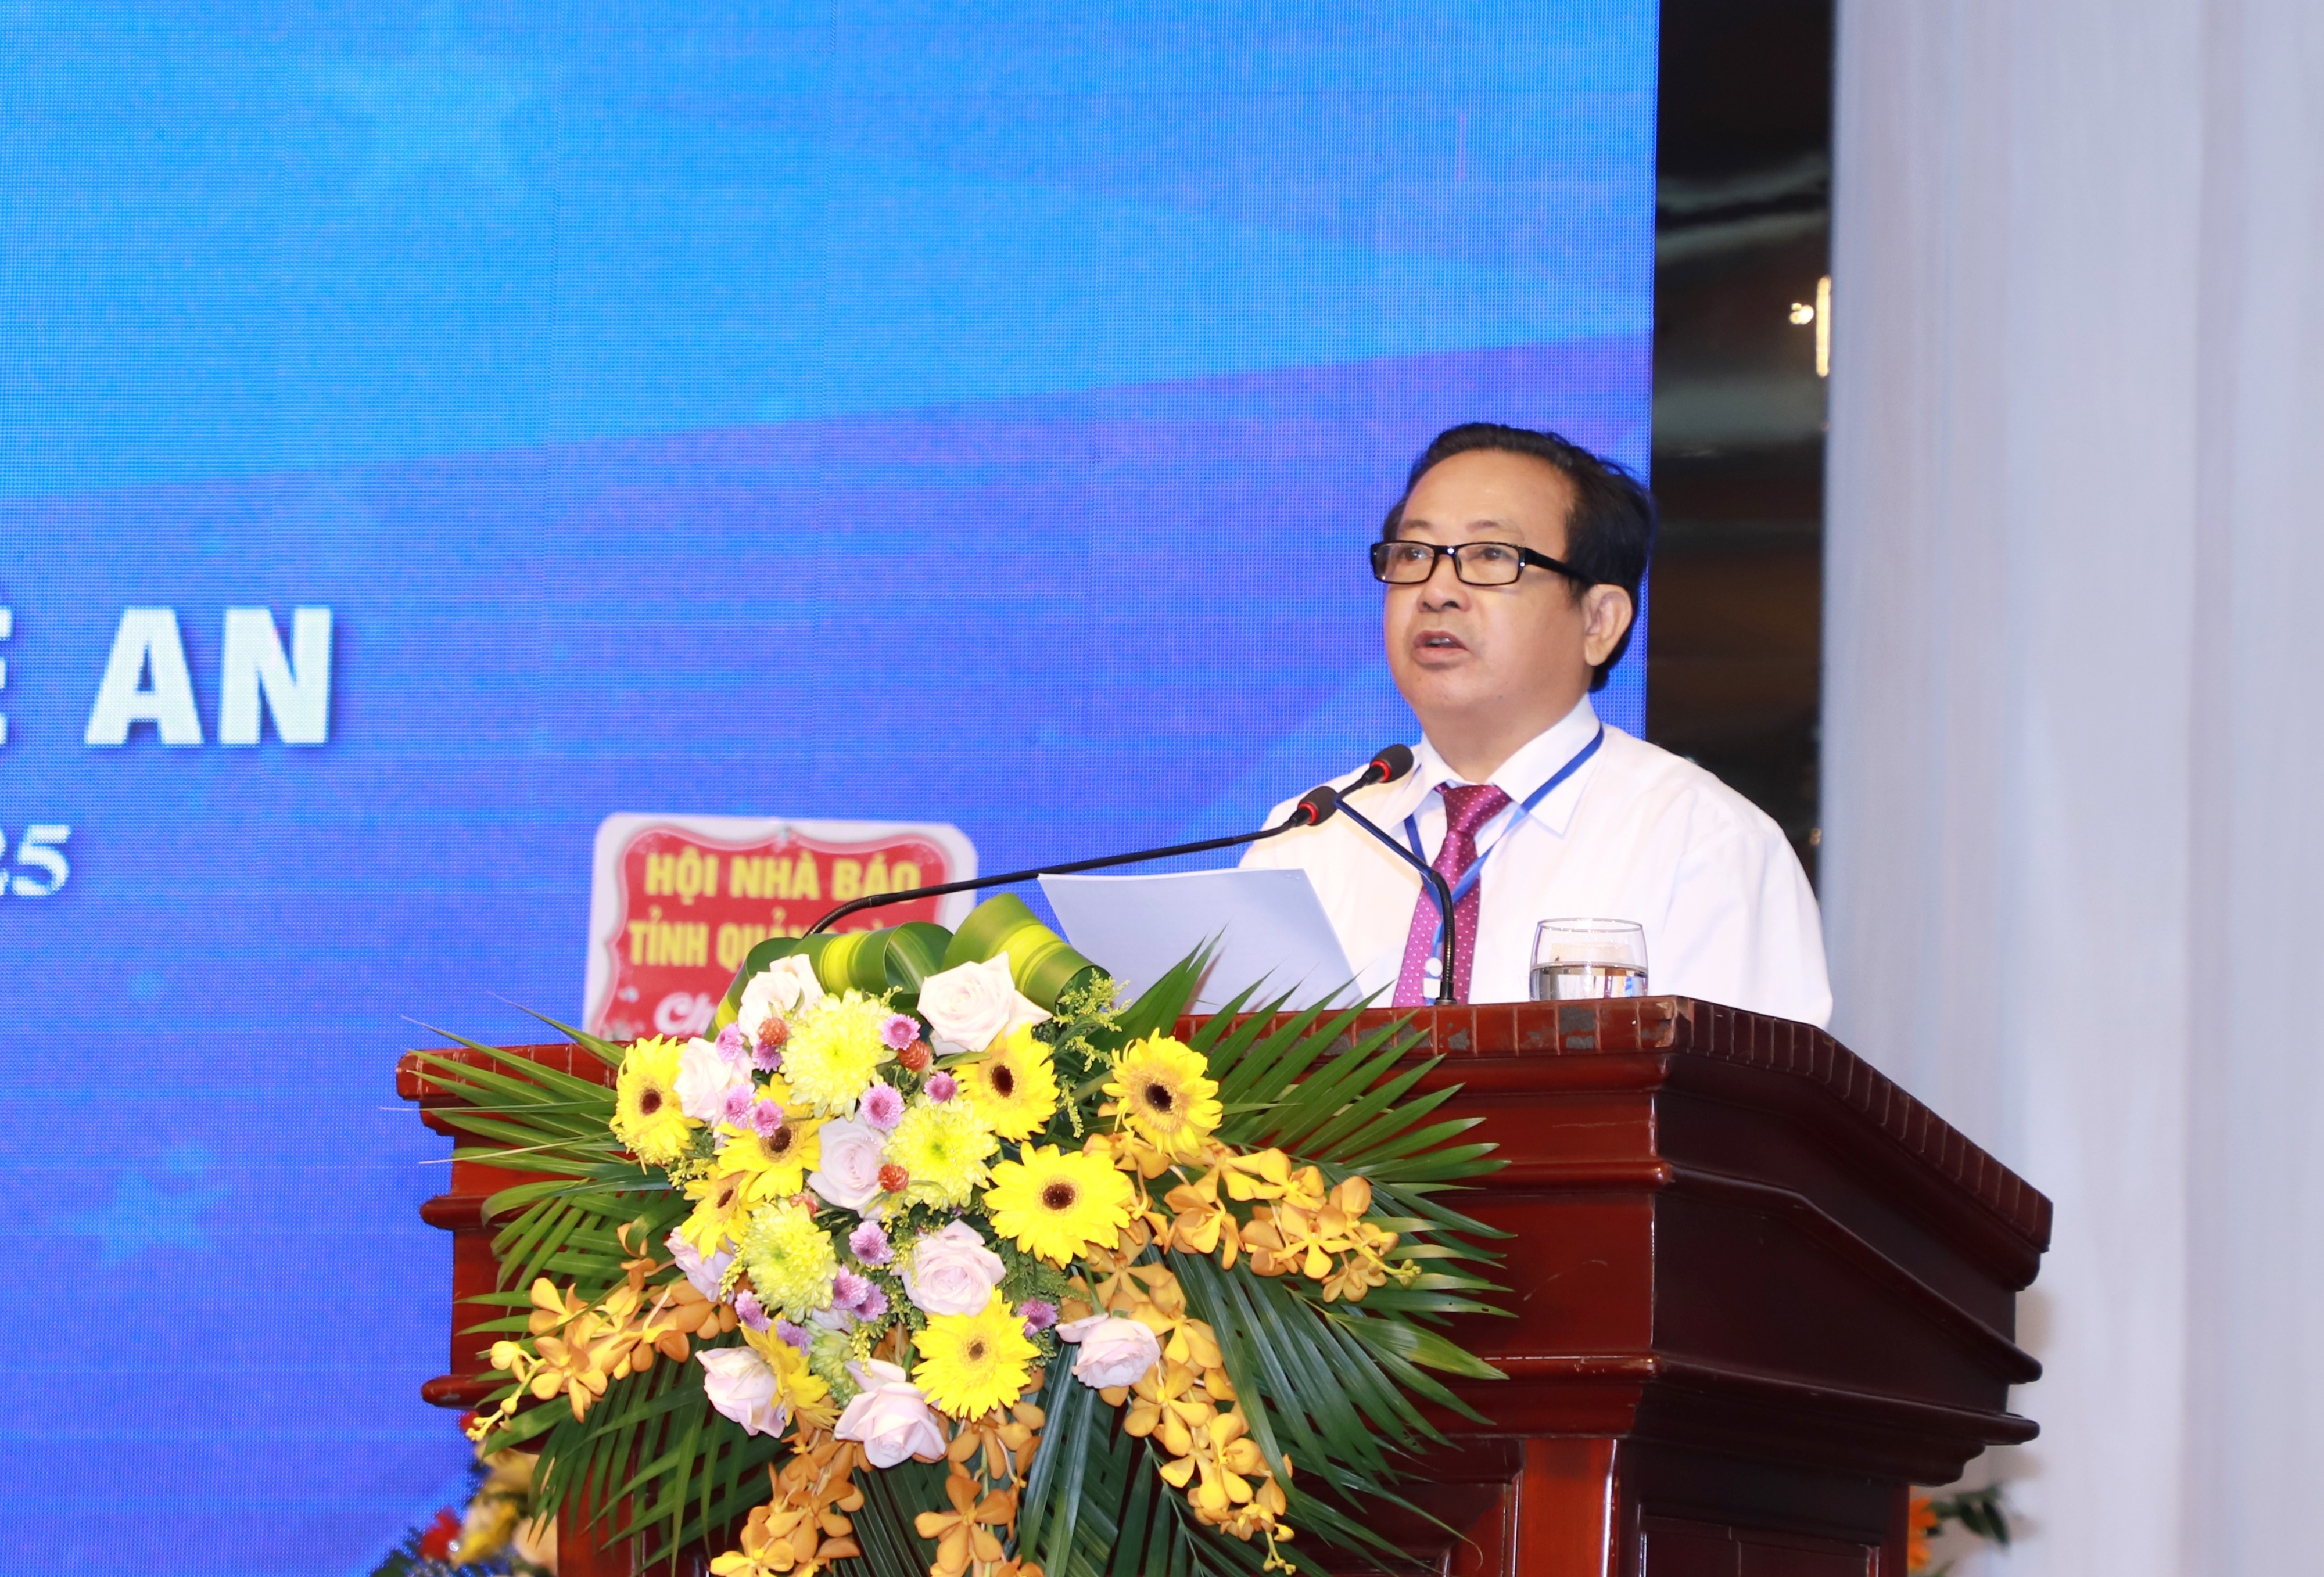 Đồng chí Trần Duy Ngoãn - Chủ tịch Hội Nhà báo Nghệ An nhiệm kỳ 2015-2020 trình bày Báo cáo chính trị Đại hội. Ảnh: Phạm Bằng